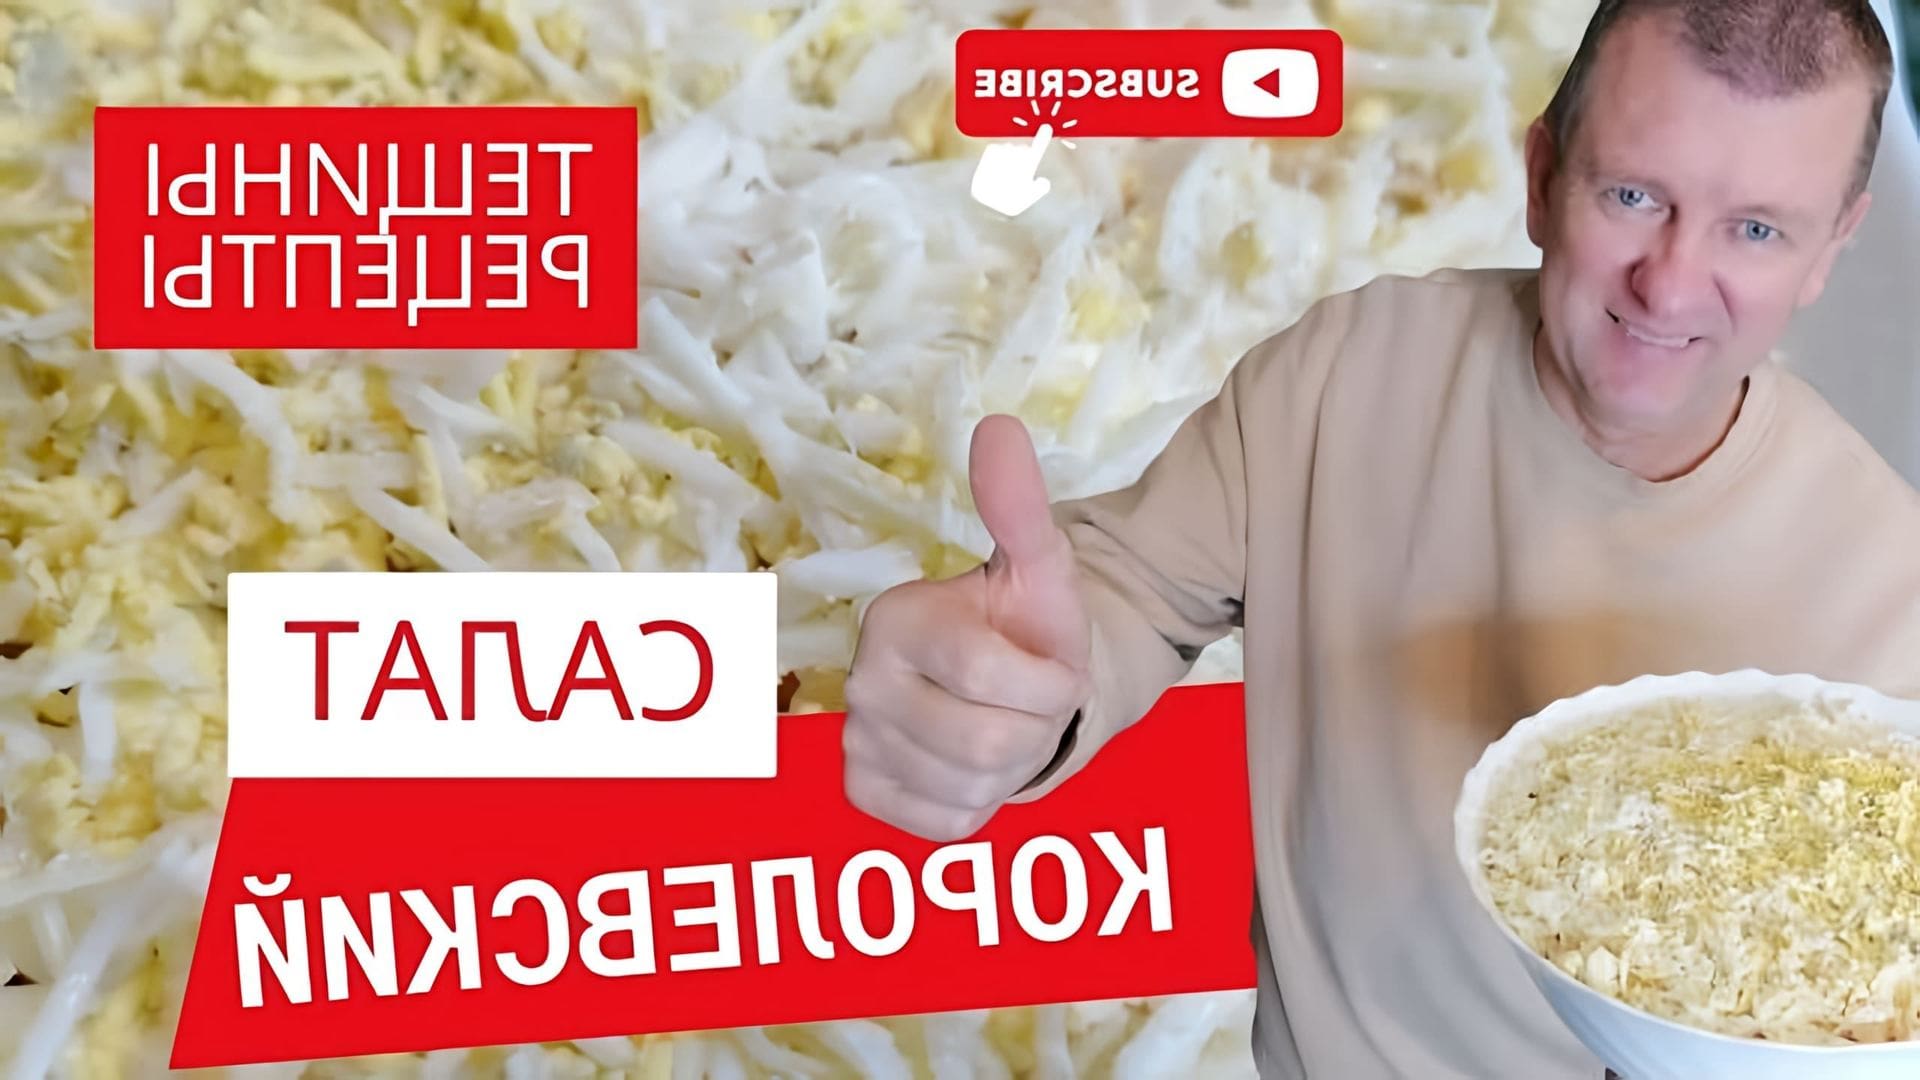 В этом видео Сергей показывает, как приготовить салат "Королевский" по рецепту его тещи